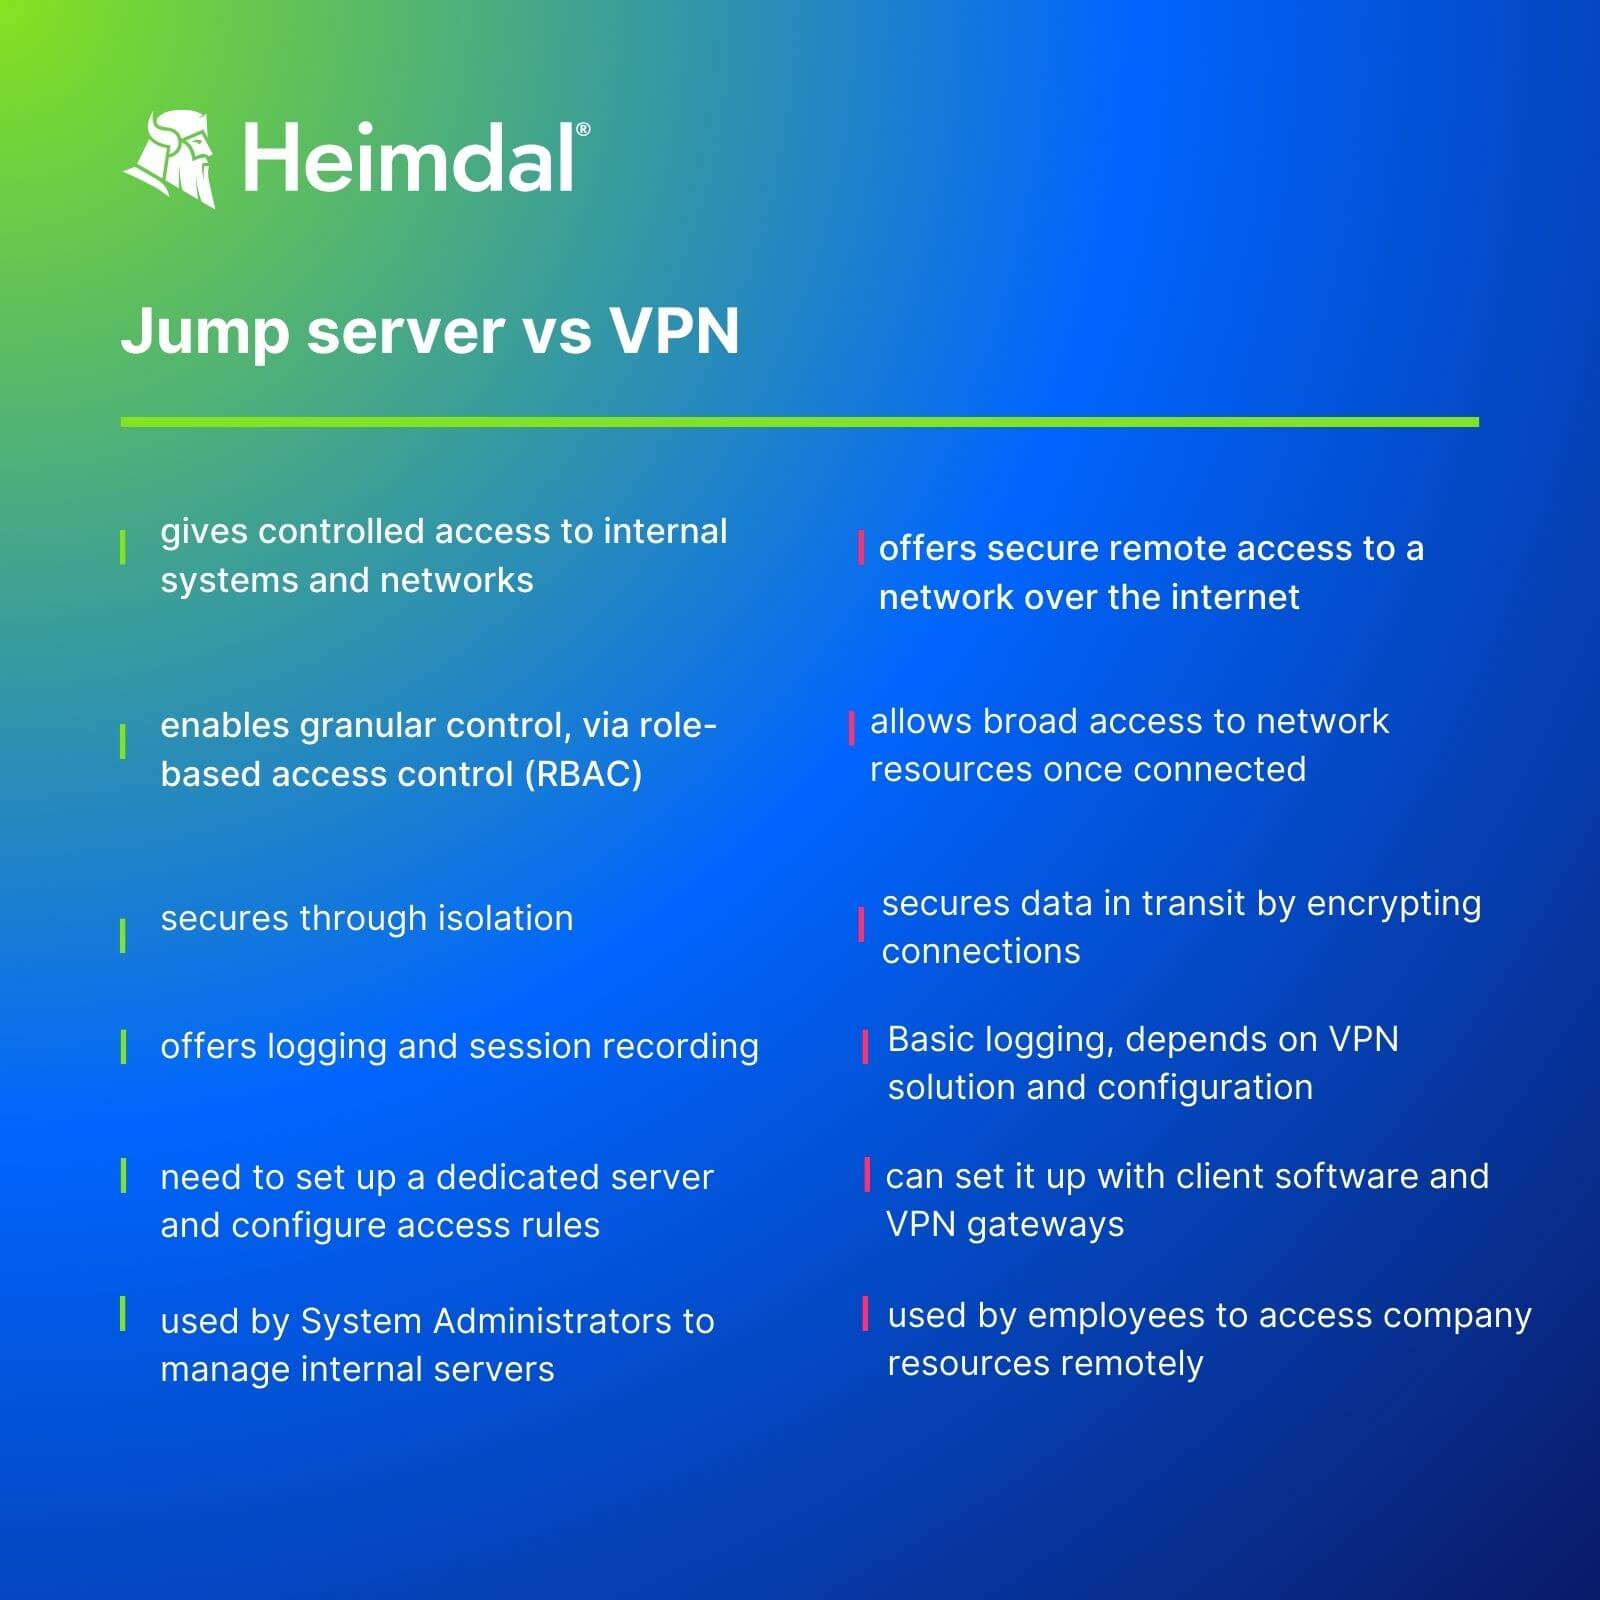 jump server vs vpn features